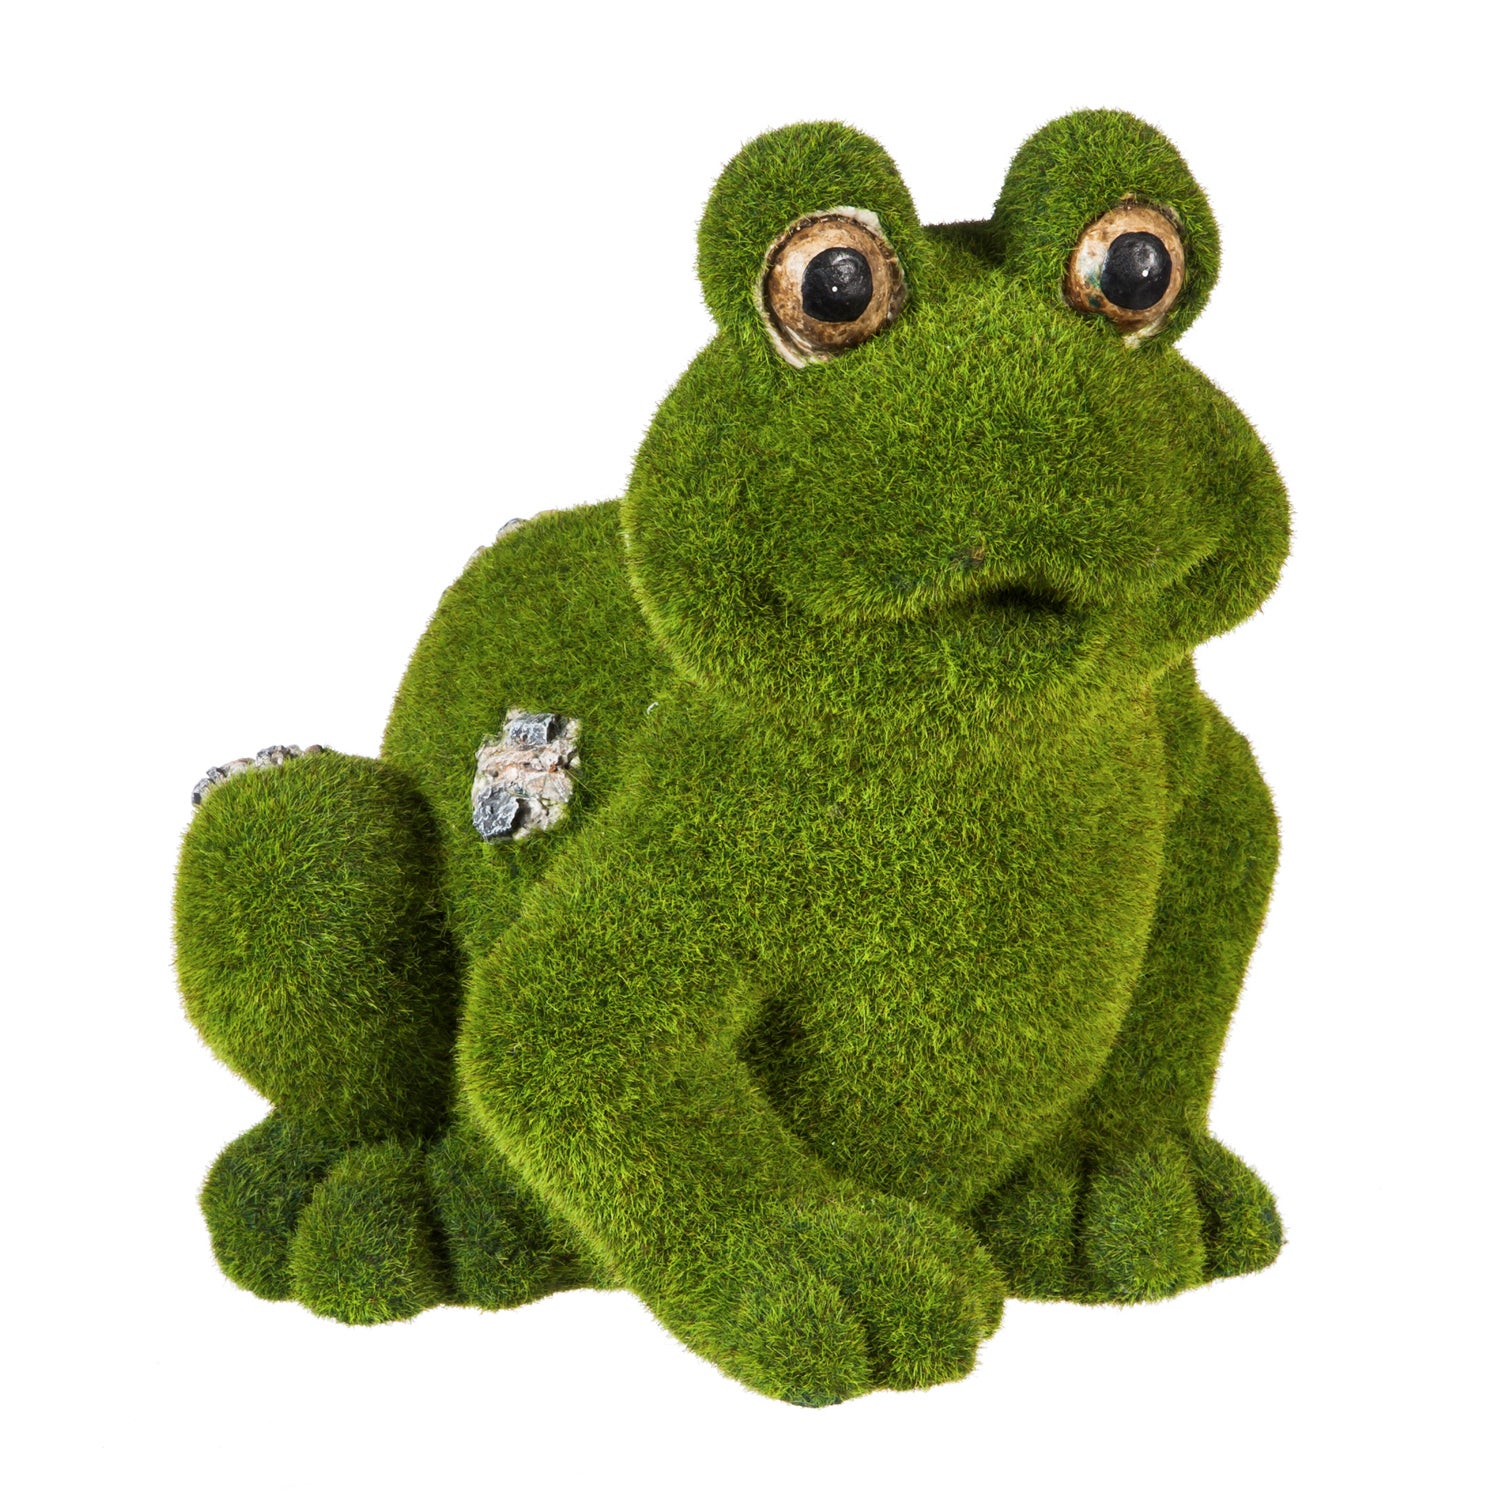 Flocked Frog Outdoor Garden Figurine